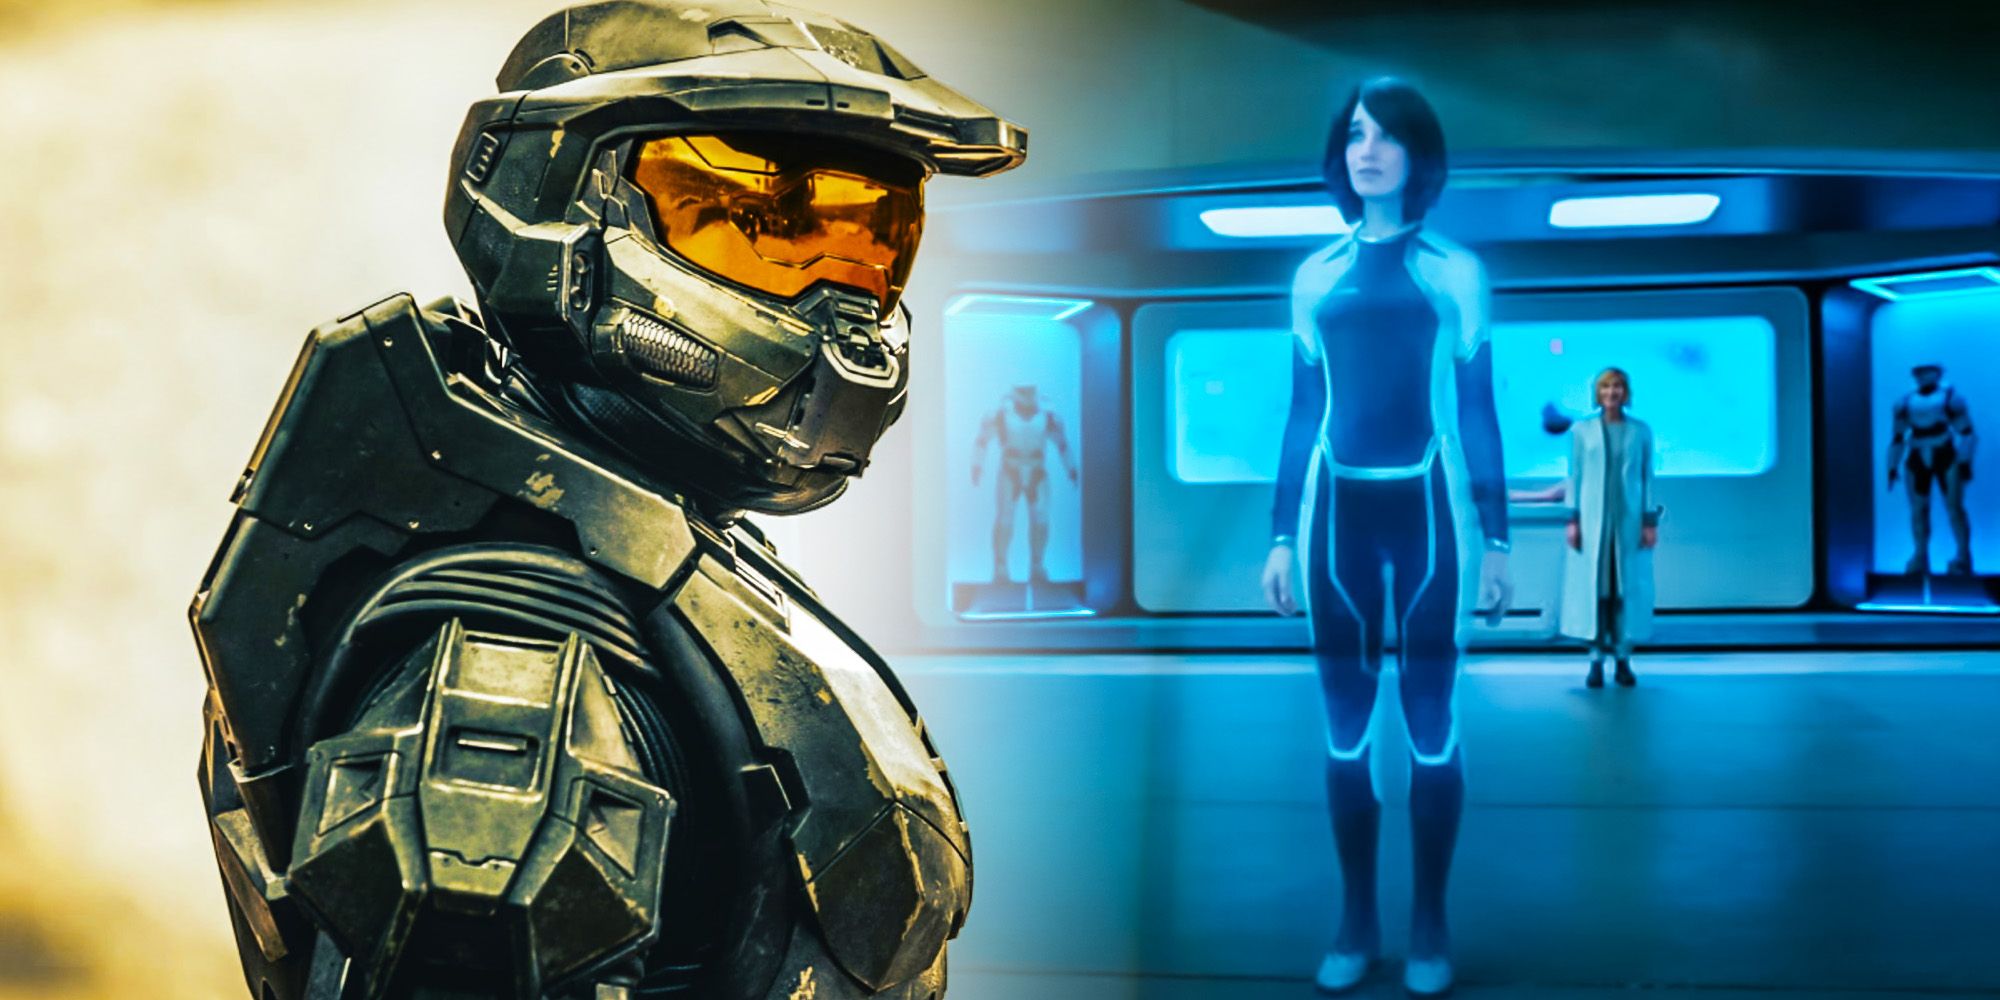 ¿Por qué Cortana es tan alta en el programa de televisión Halo?  Por qué no rompe Canon